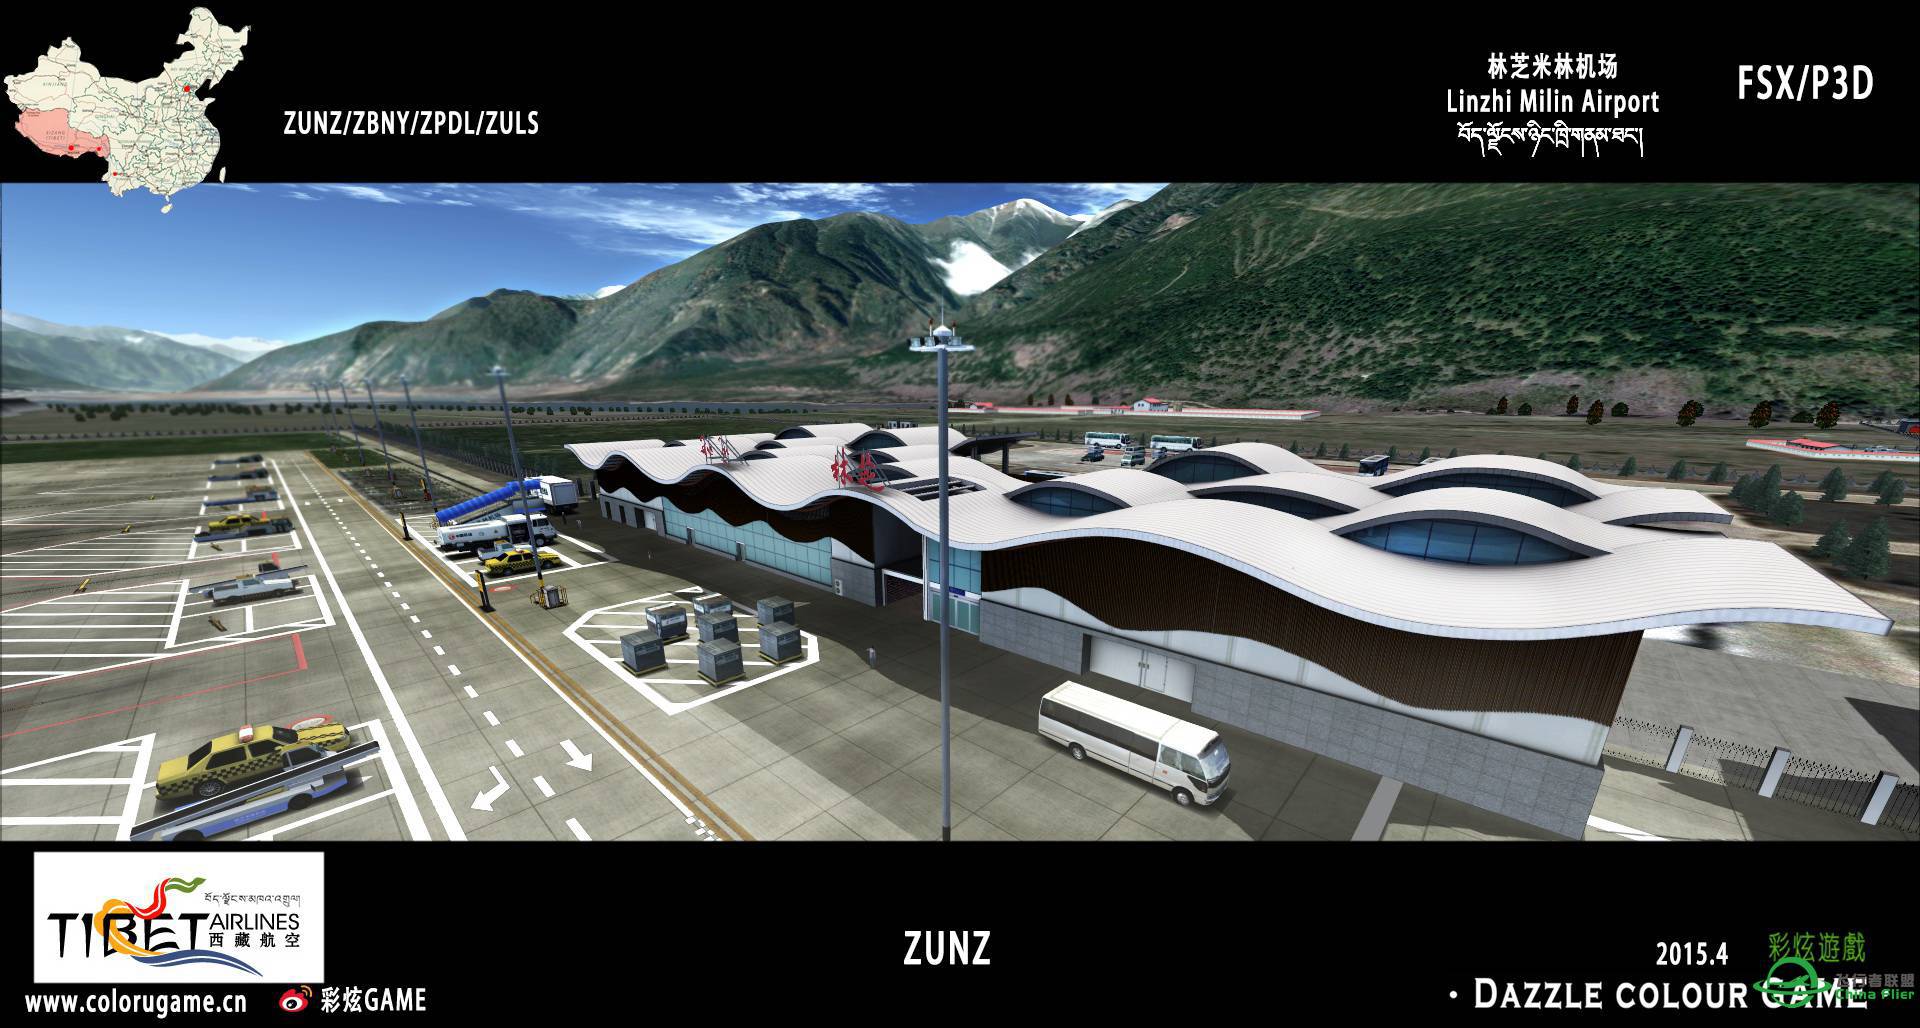 彩炫地景：林芝米林机场（ZUNZ）正式发布！-9154 